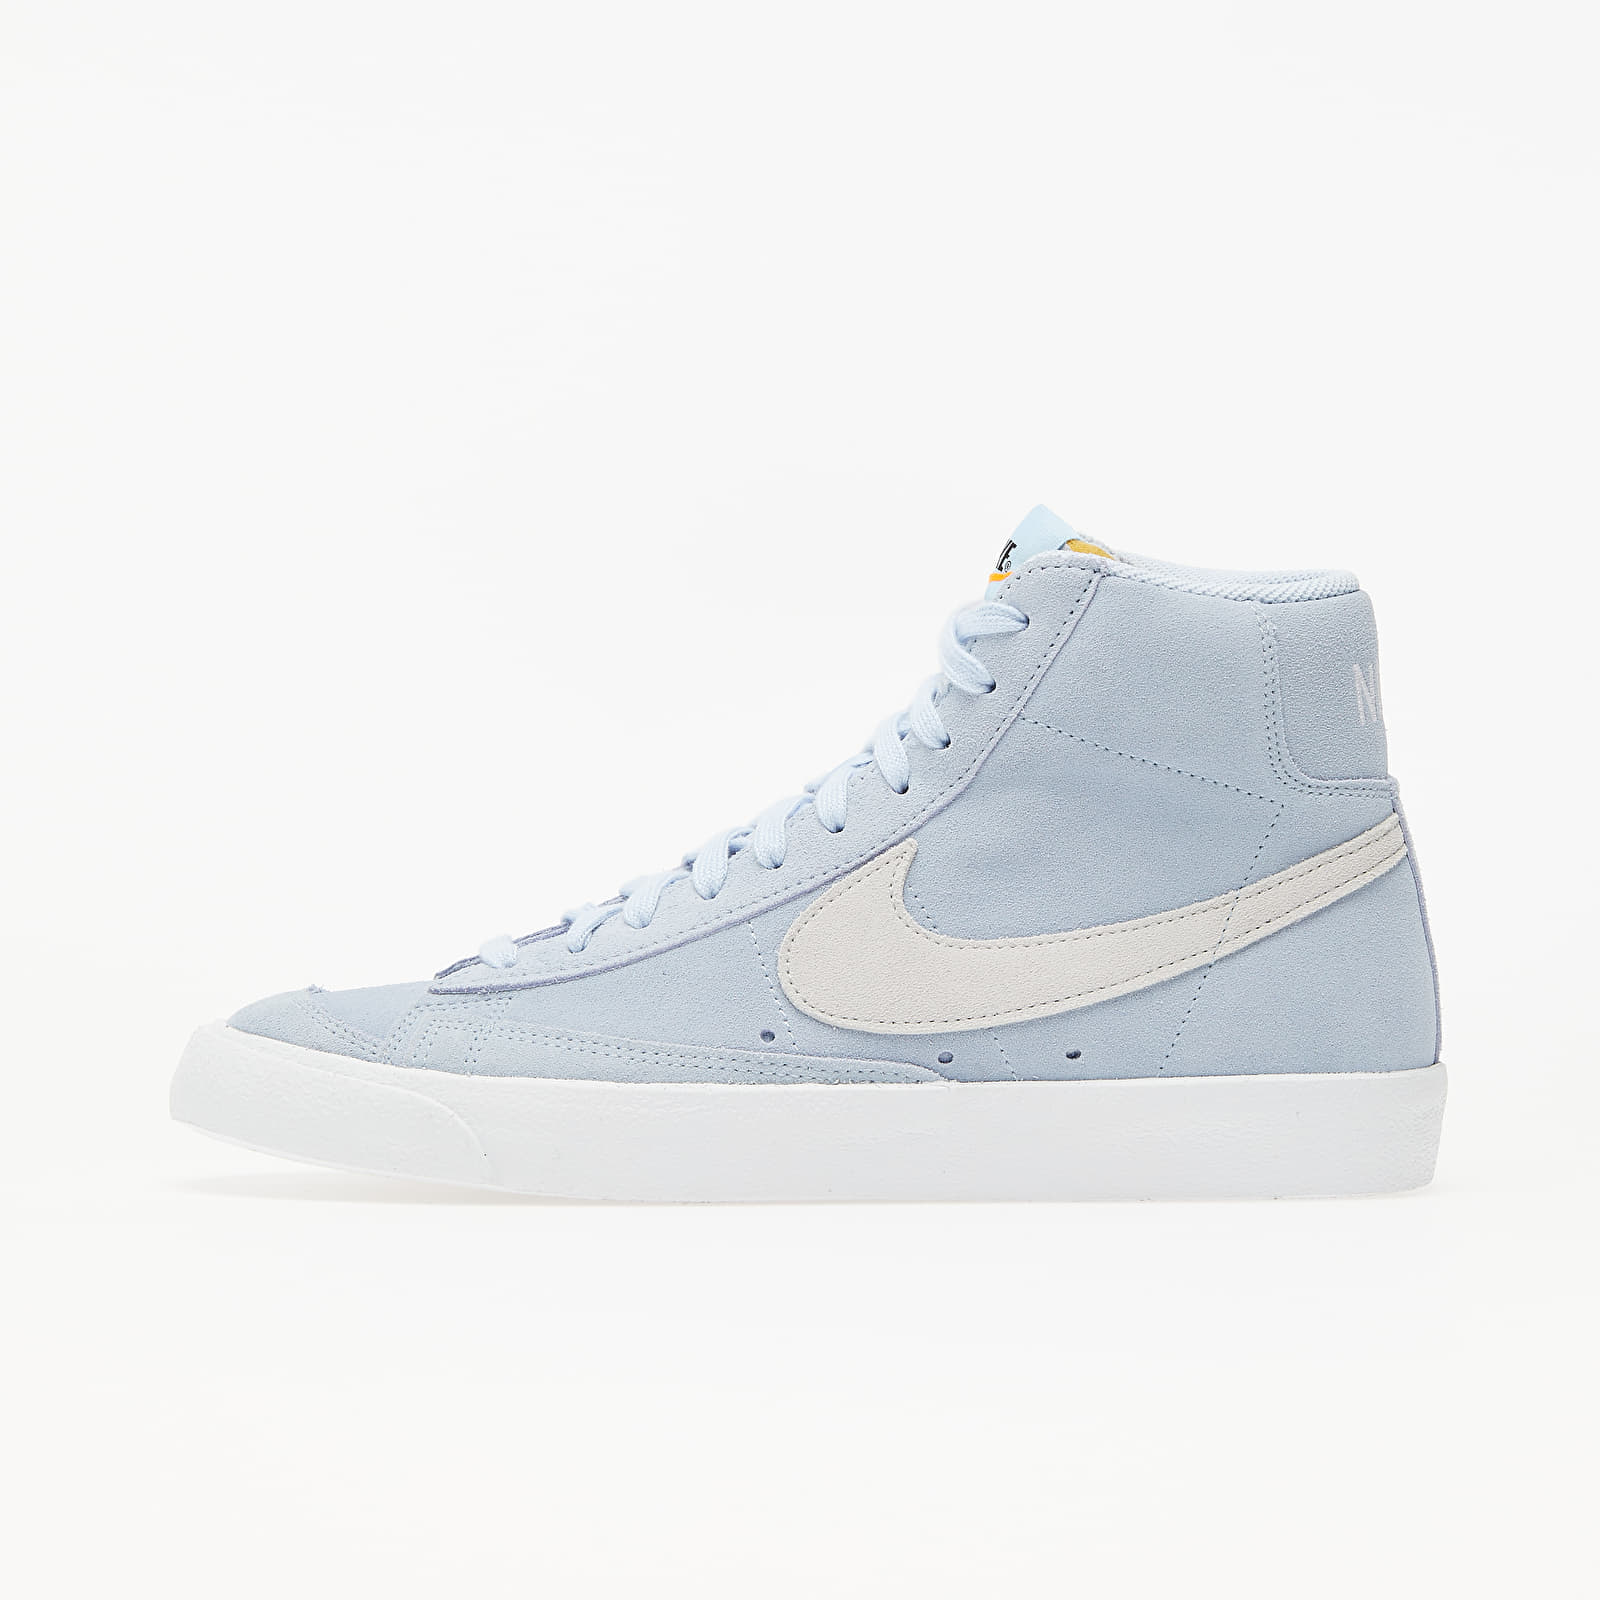 Chaussures et baskets homme Nike Blazer Mid '77 Suede Hydrogen Blue/ White-White